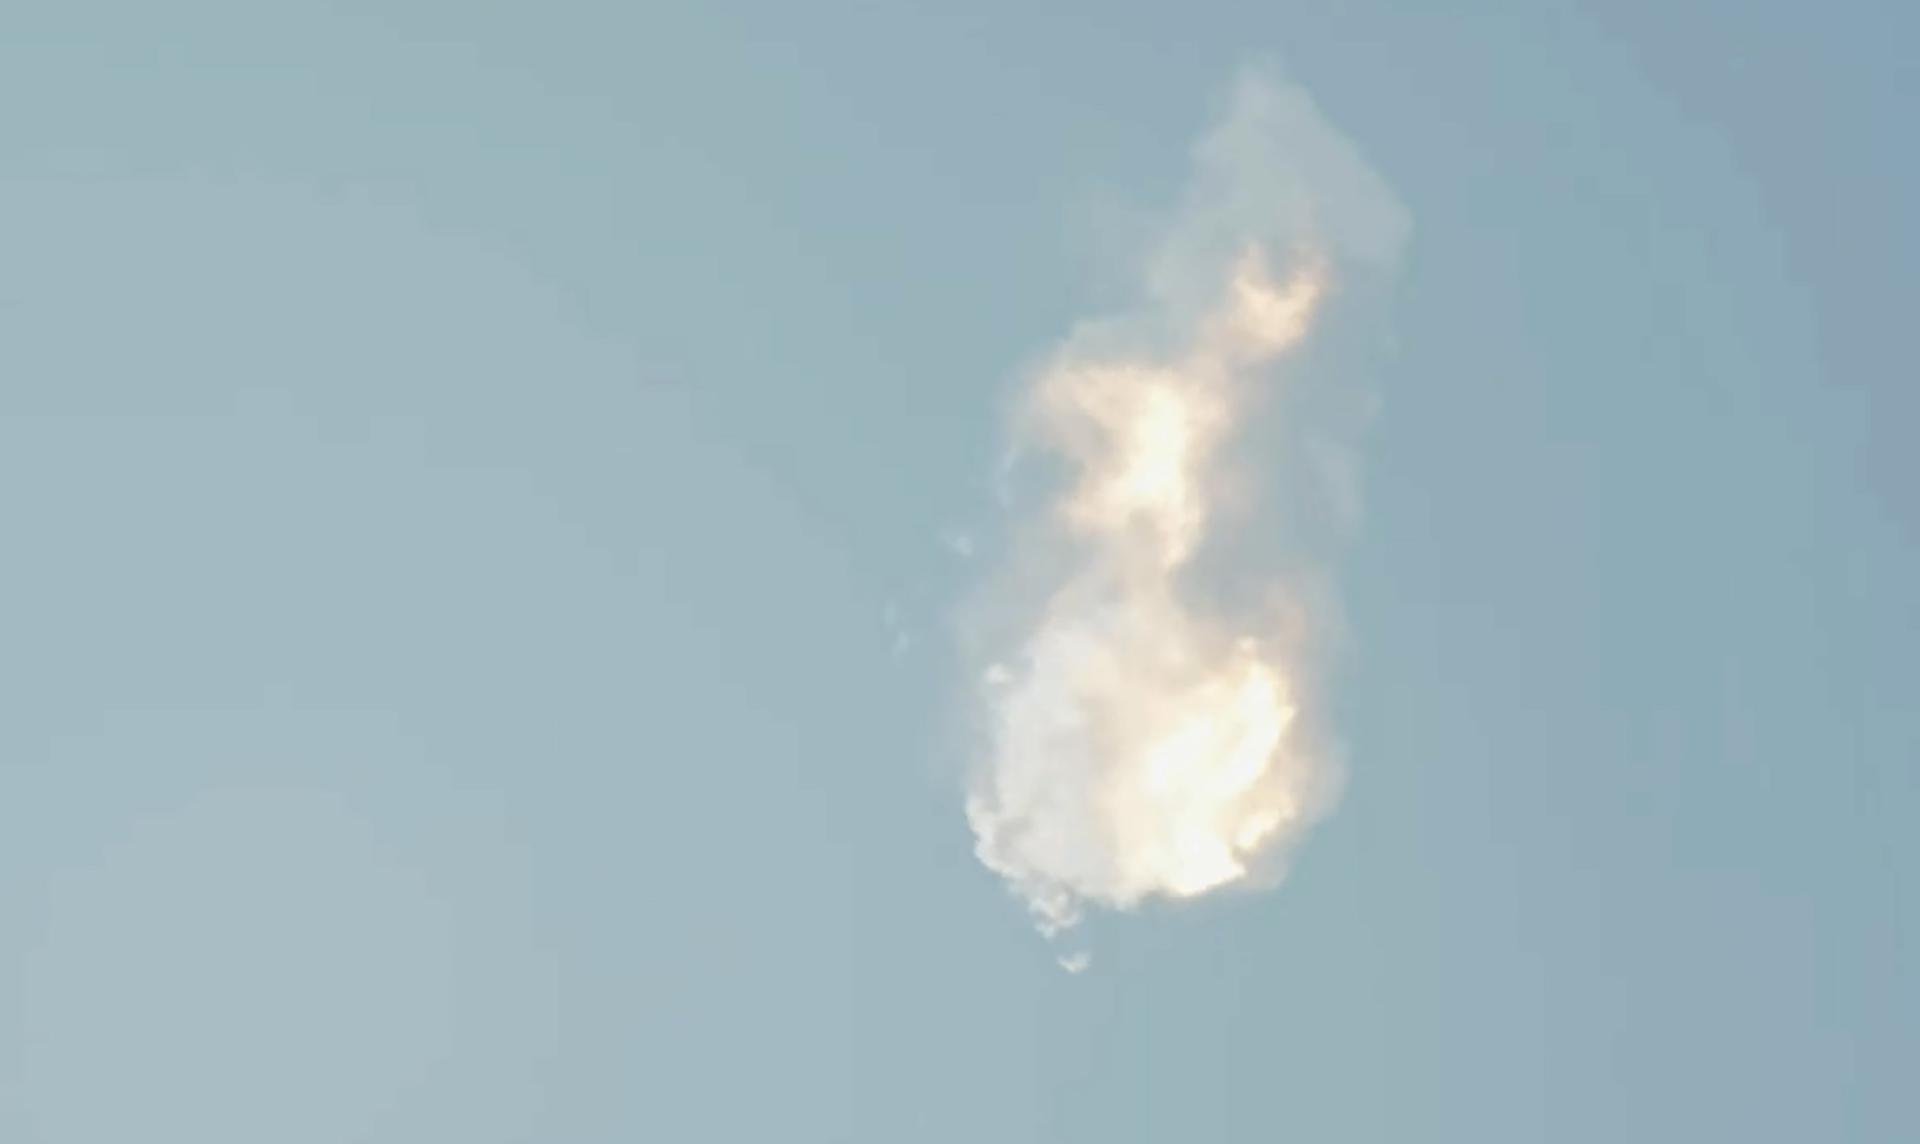 Tesla cae siete puntos en bolsa tras la explosión del cohete de Elon Musk, Starship X, y arrastra al Nasdaq